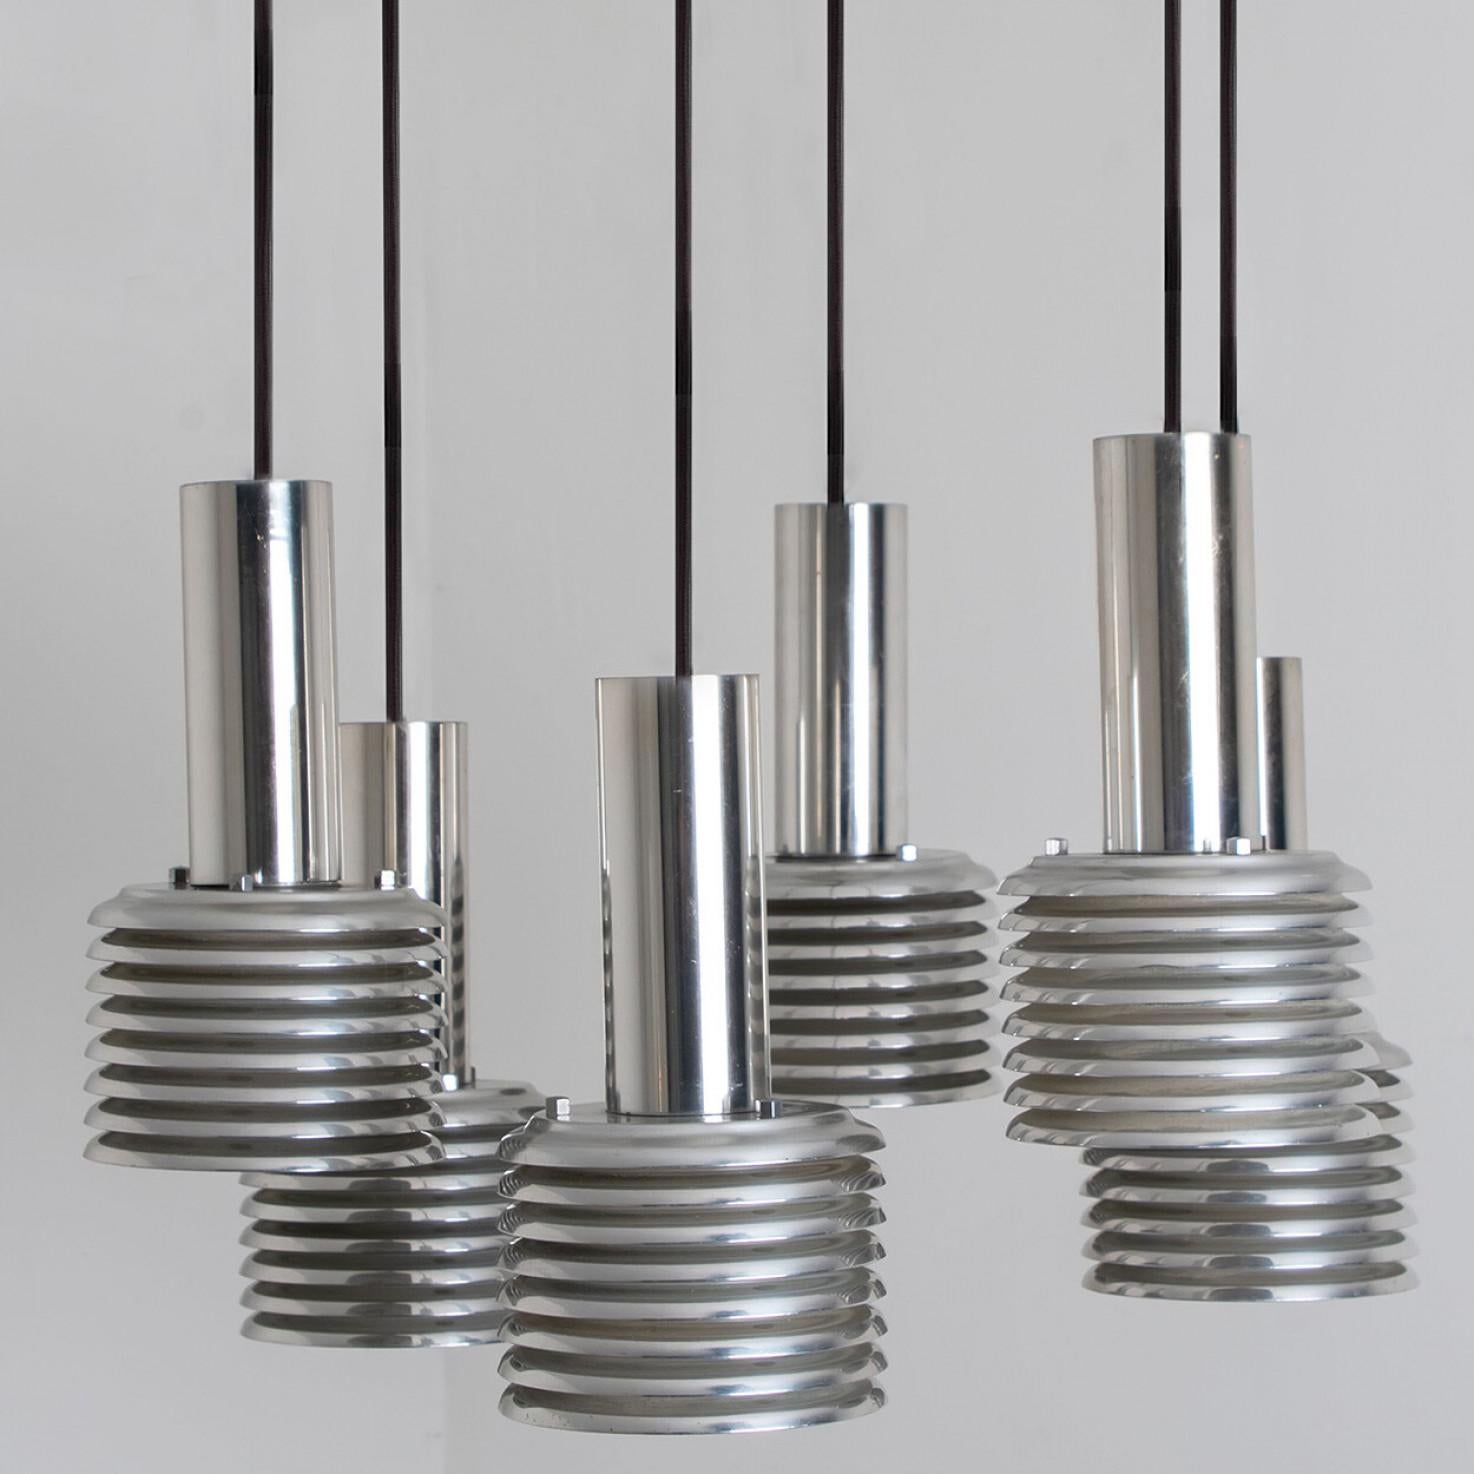 L'une des six cascades originales de lampes suspendues chromées des années 1970 produites par Staff Leuchten, Allemagne.
Luminaires en verre de qualité supérieure avec abat-jour soufflé à la main sur une suspension chromée. Pièces originales.
Cet